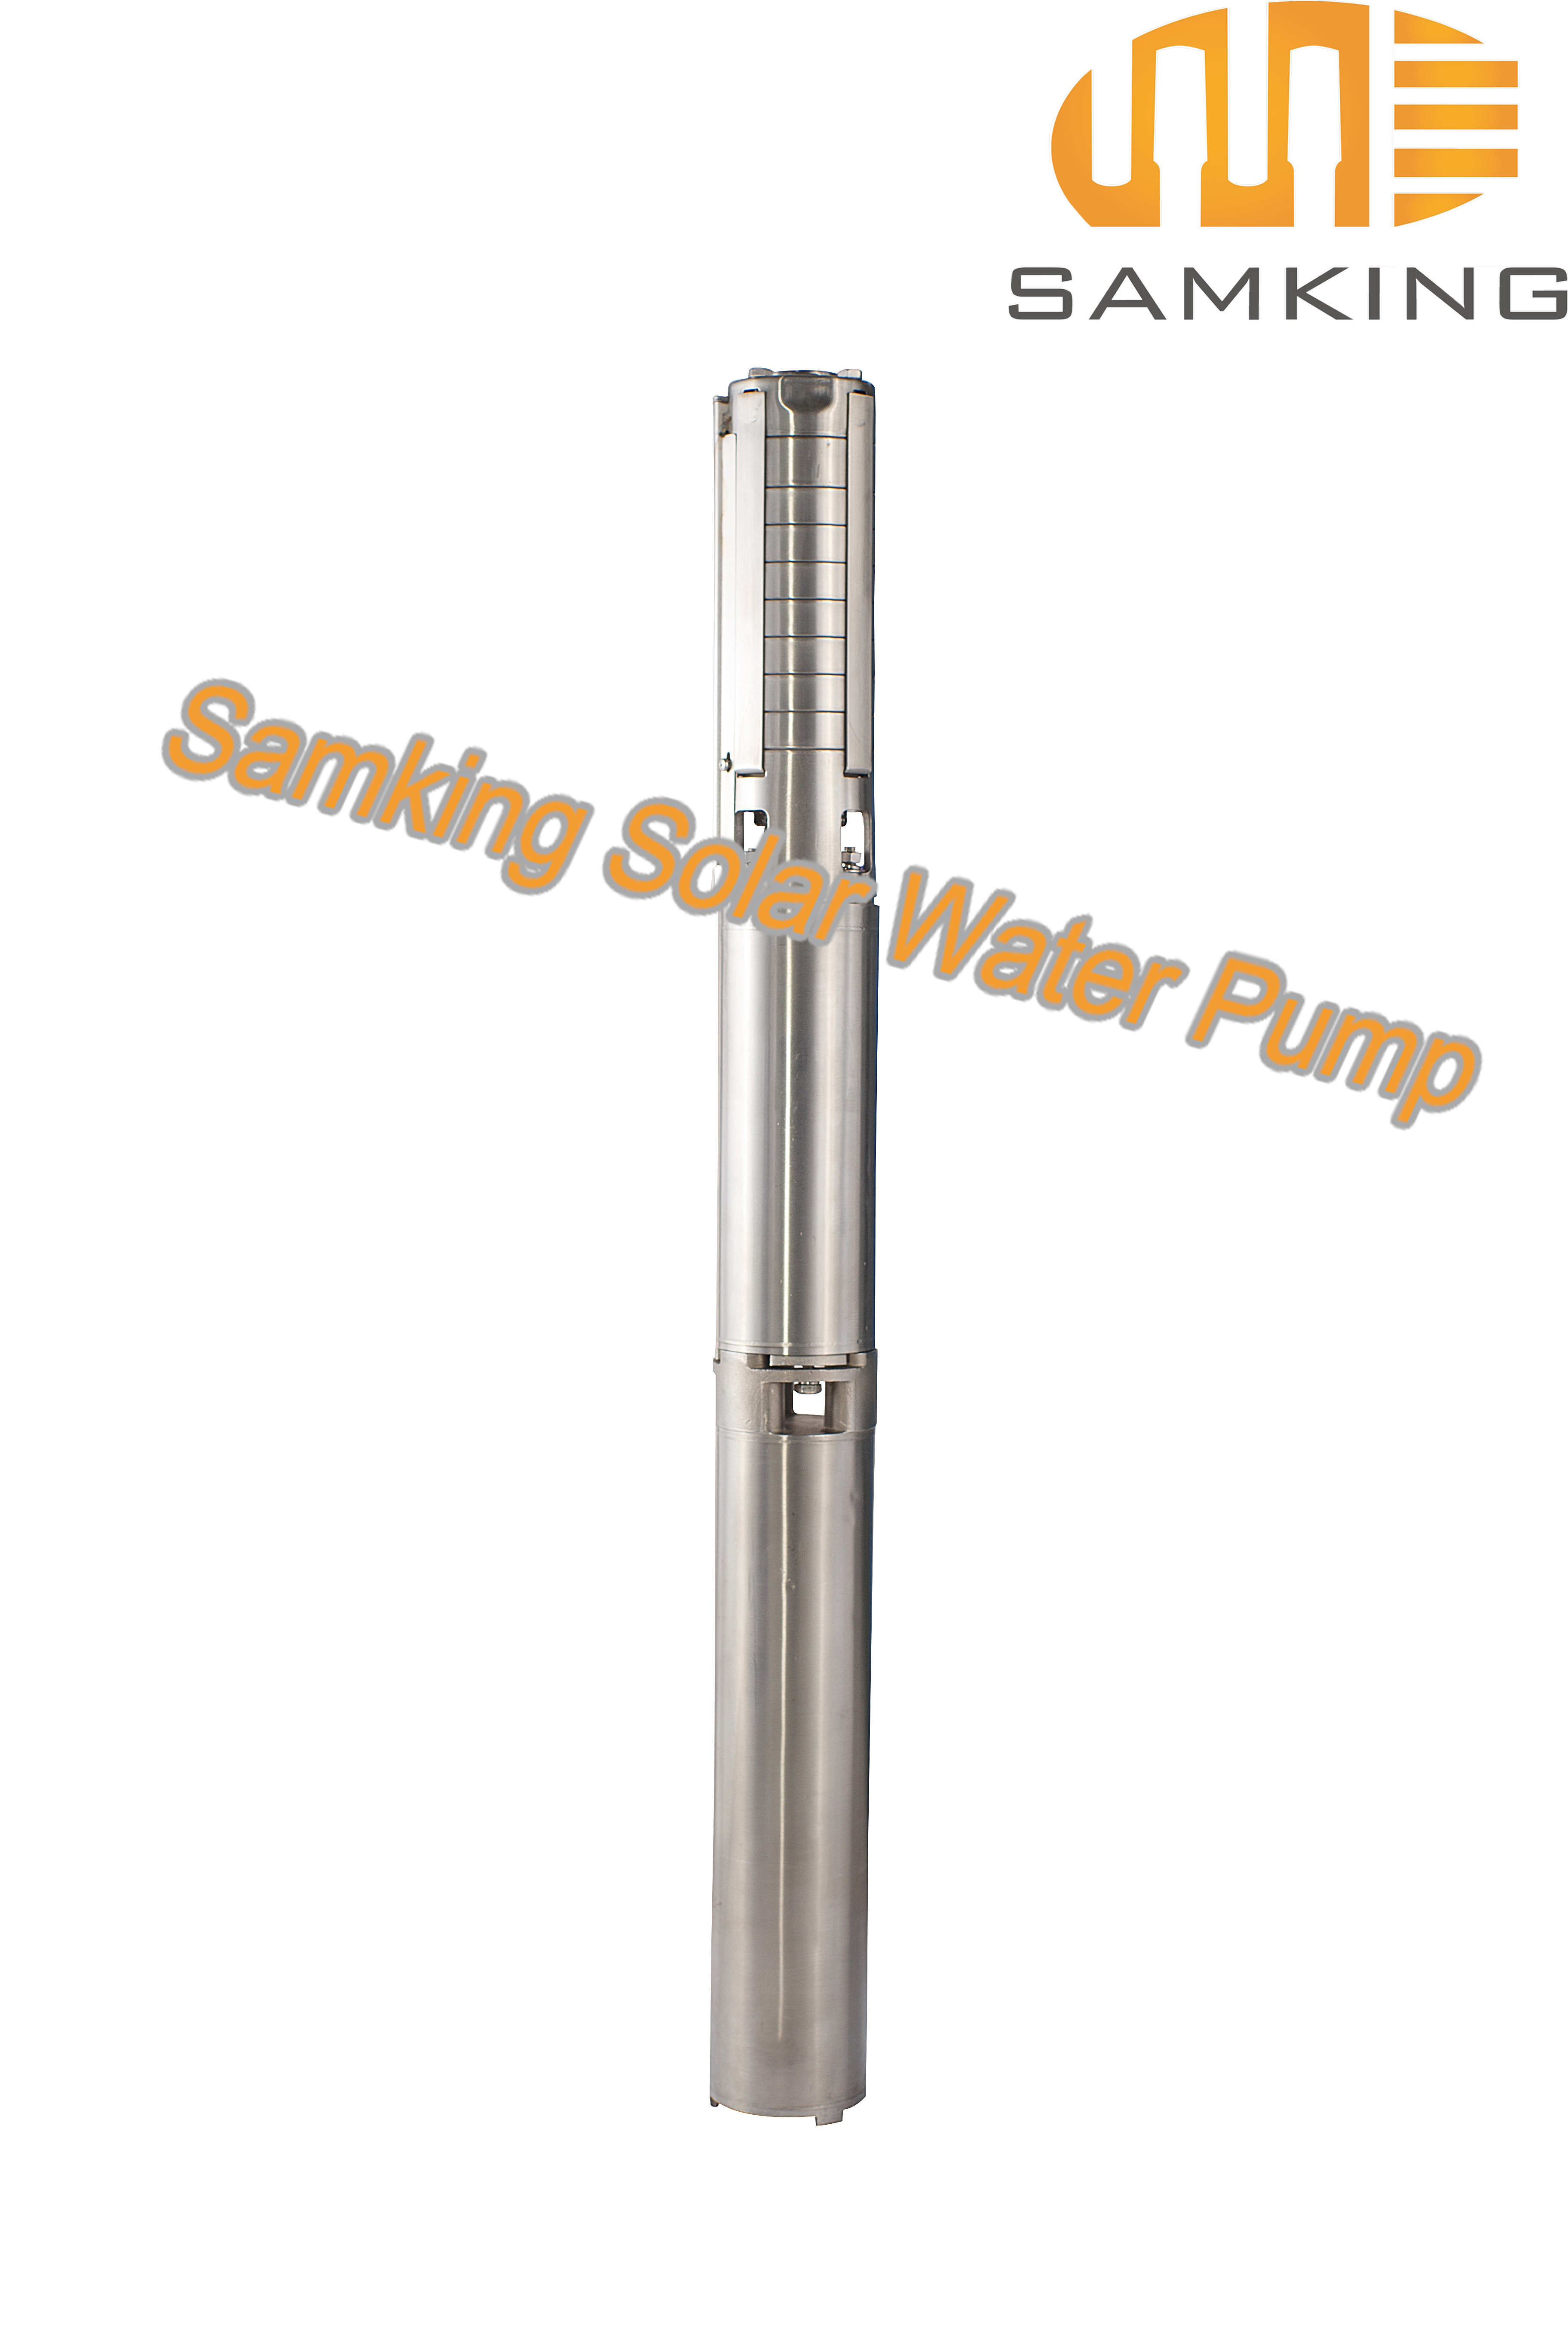 4SP2-7 Samking Solar Water Pump